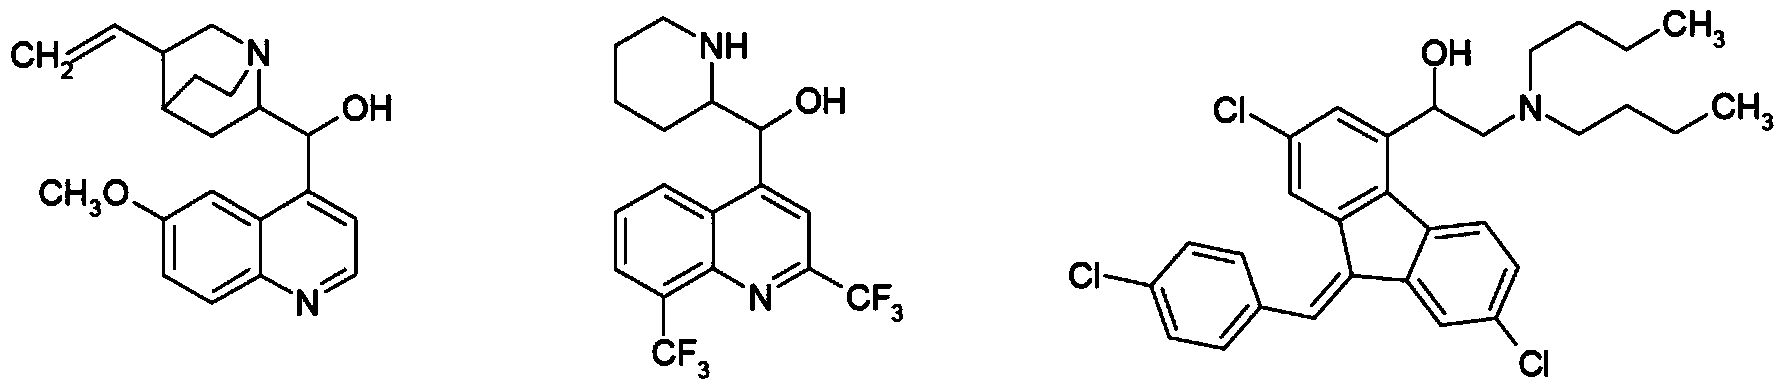 Amidophenoxypropanolamines